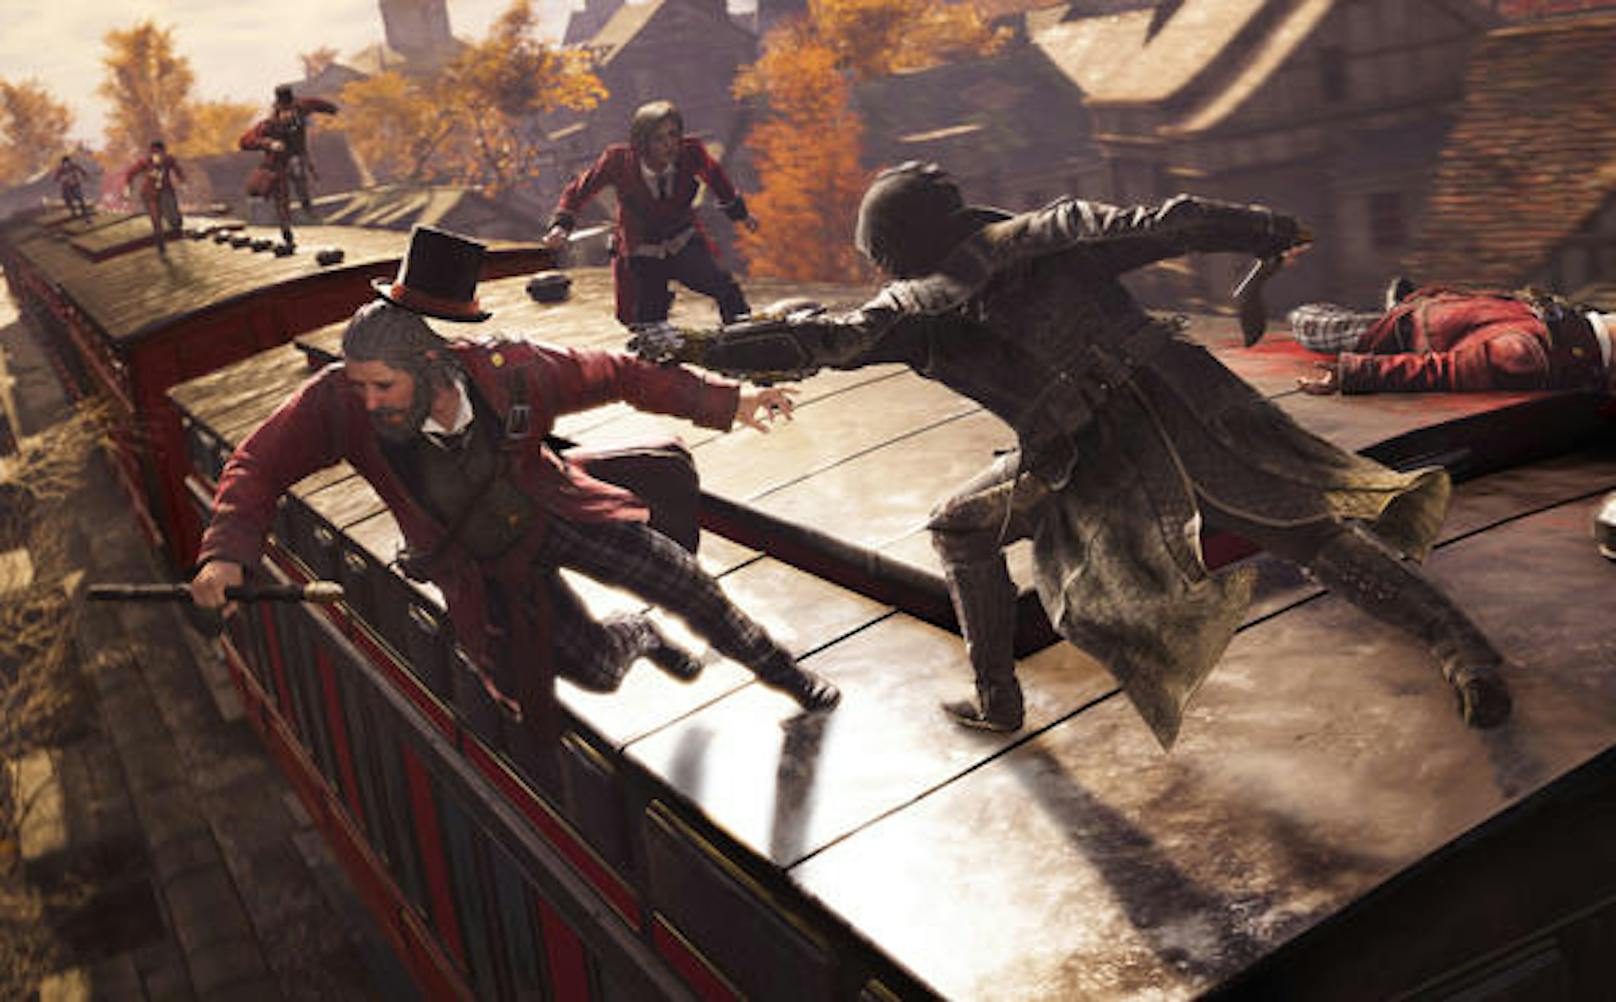 Assassin's Creed bleibt einfach Assassin's Creed. Bei Syndicate hat Ubisoft aus den teilweise gravierenden Fehlern von Unity gelernt und der Sache wieder mehr Tiefe und Anreiz gegeben.